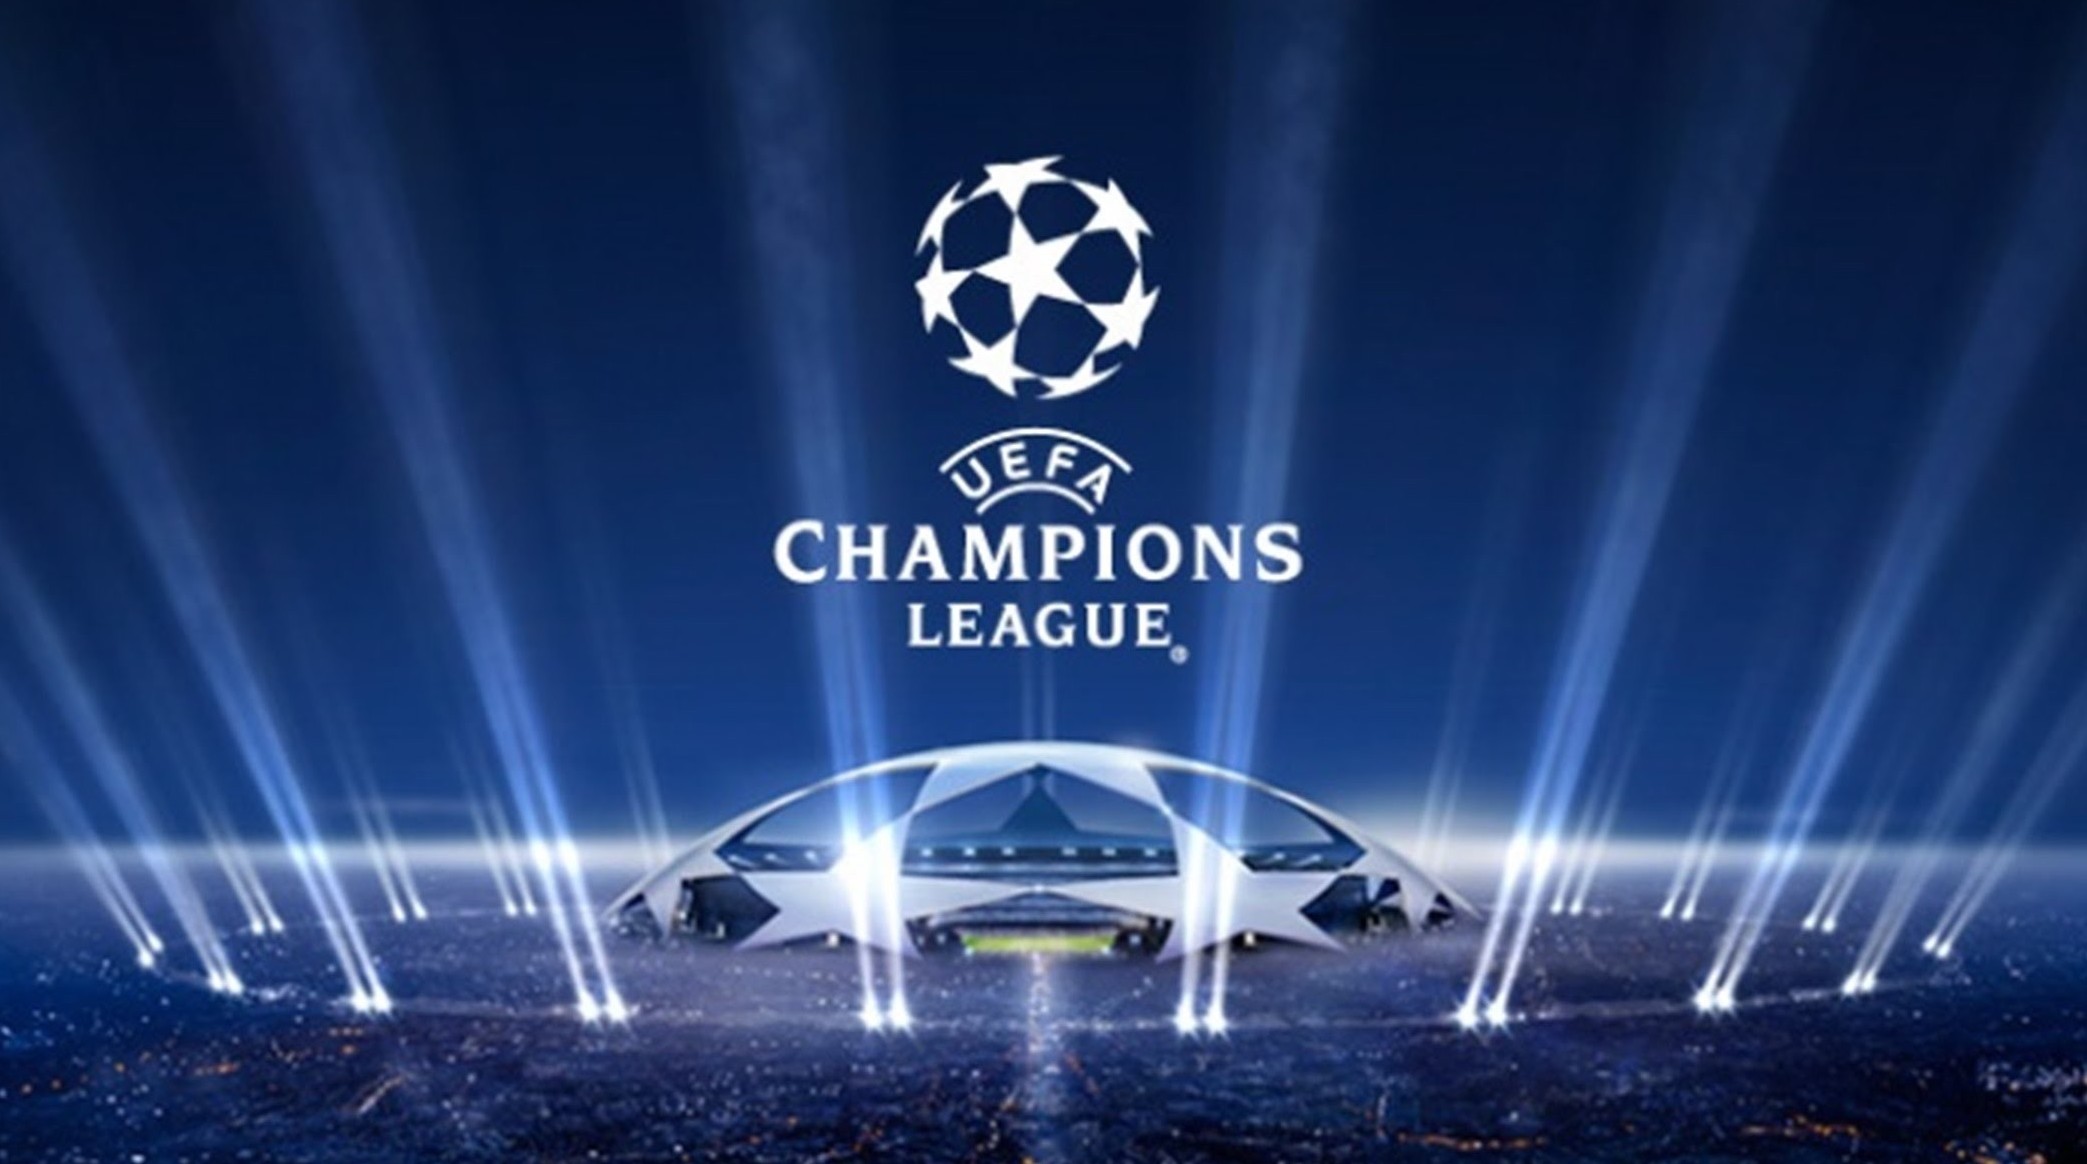 Partite Champions League 2019-2020 come vedere gratis senza abbonamento